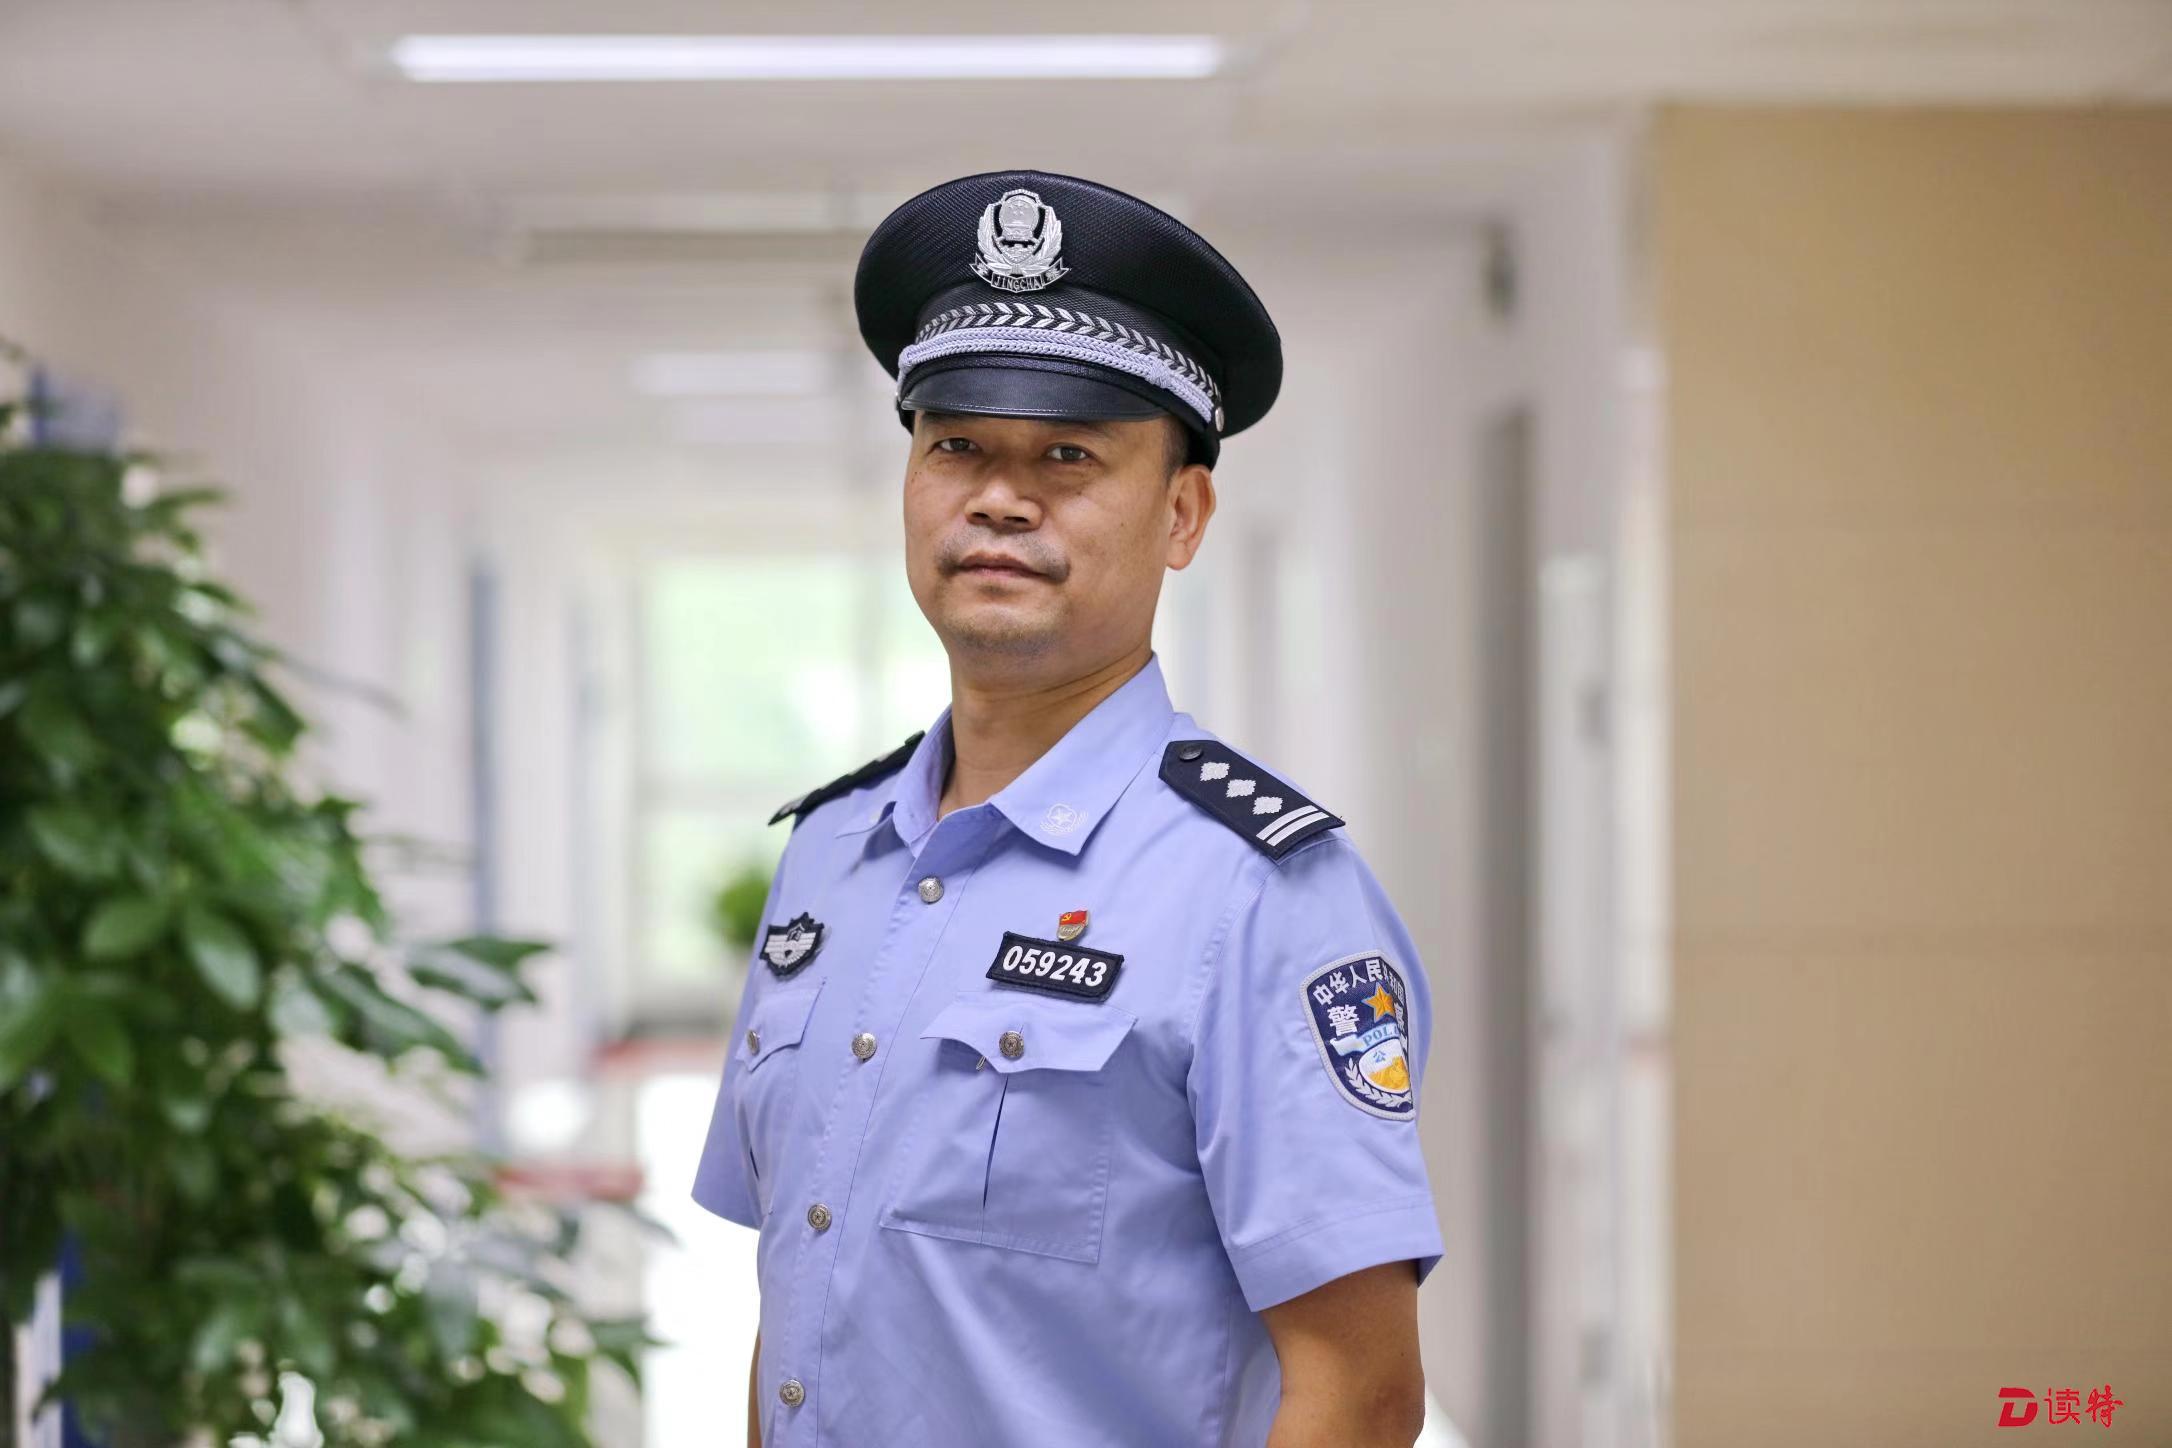 多次获深圳市公安局个人嘉奖,优秀公务员,广东省优秀人民警察等荣誉